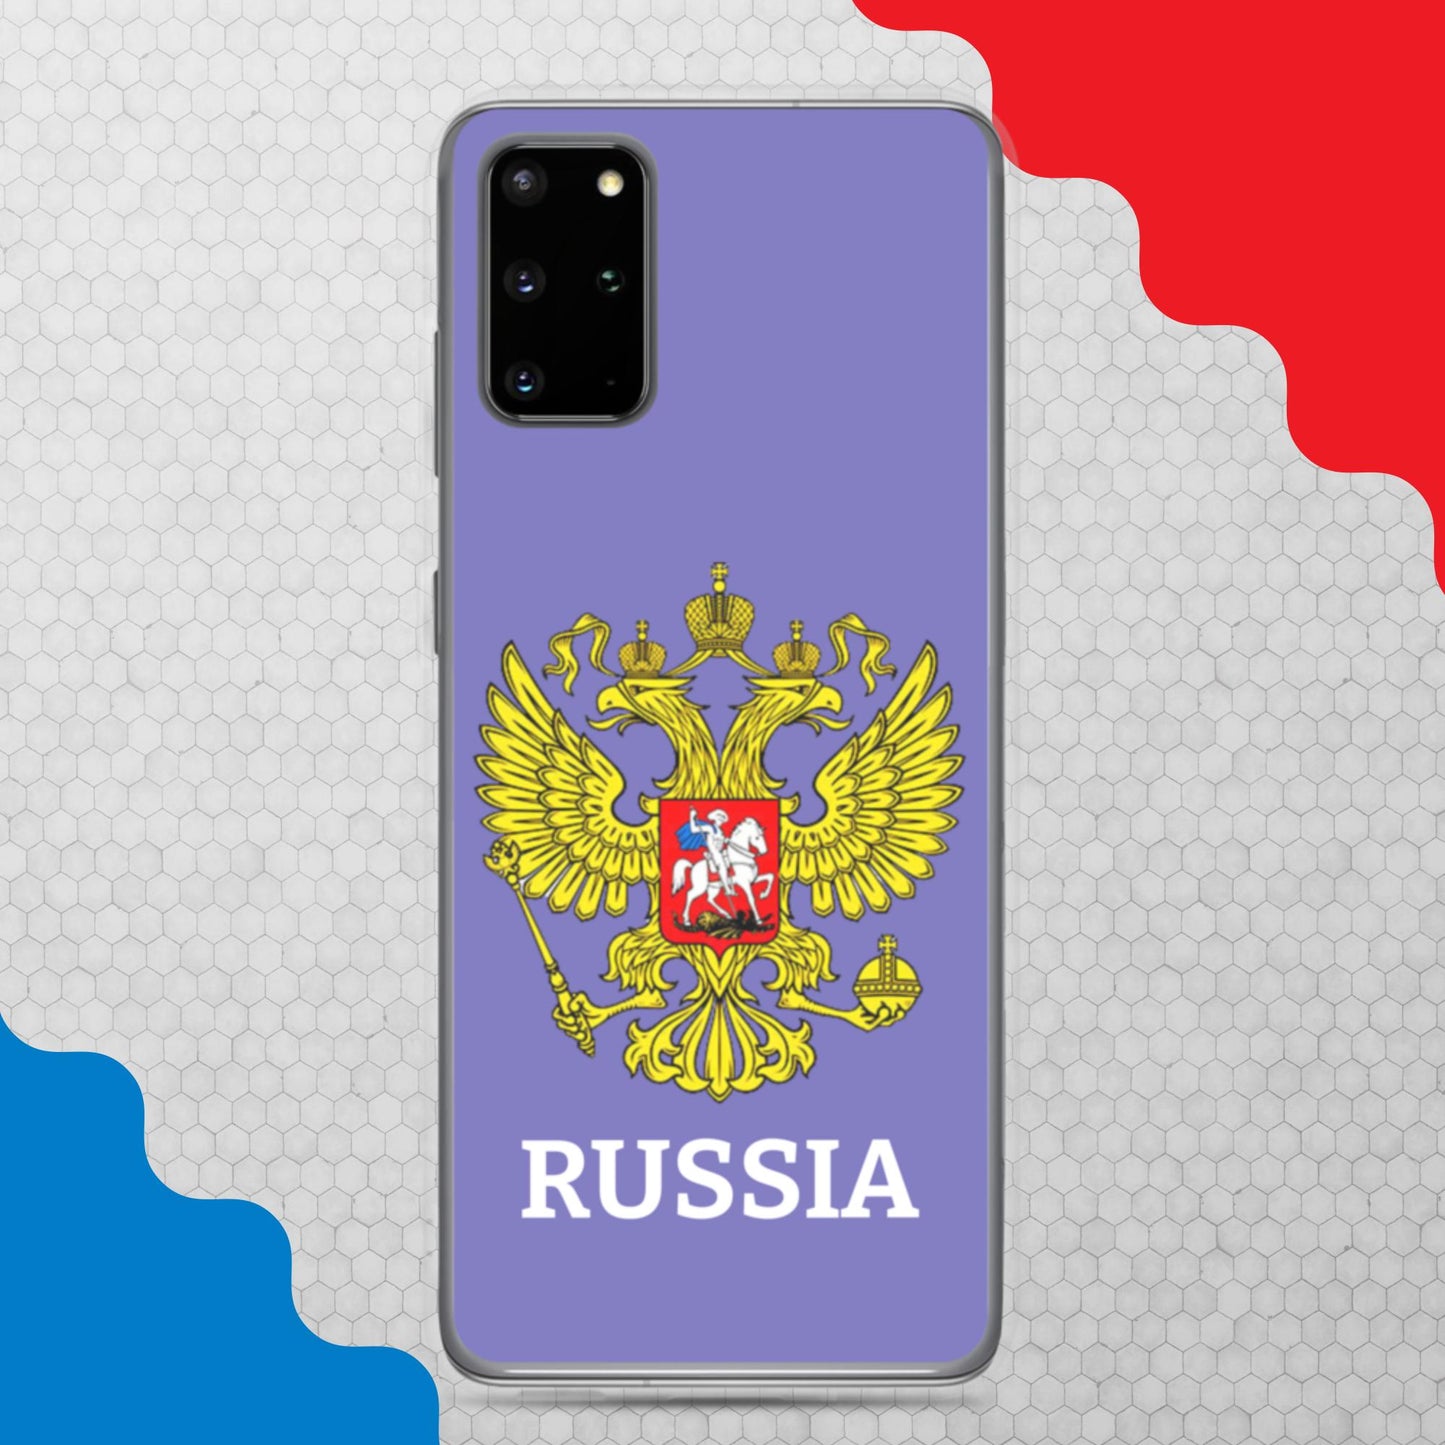 Samsung-Handyhülle mit Russland-Wappen in violett (alle Modelle)